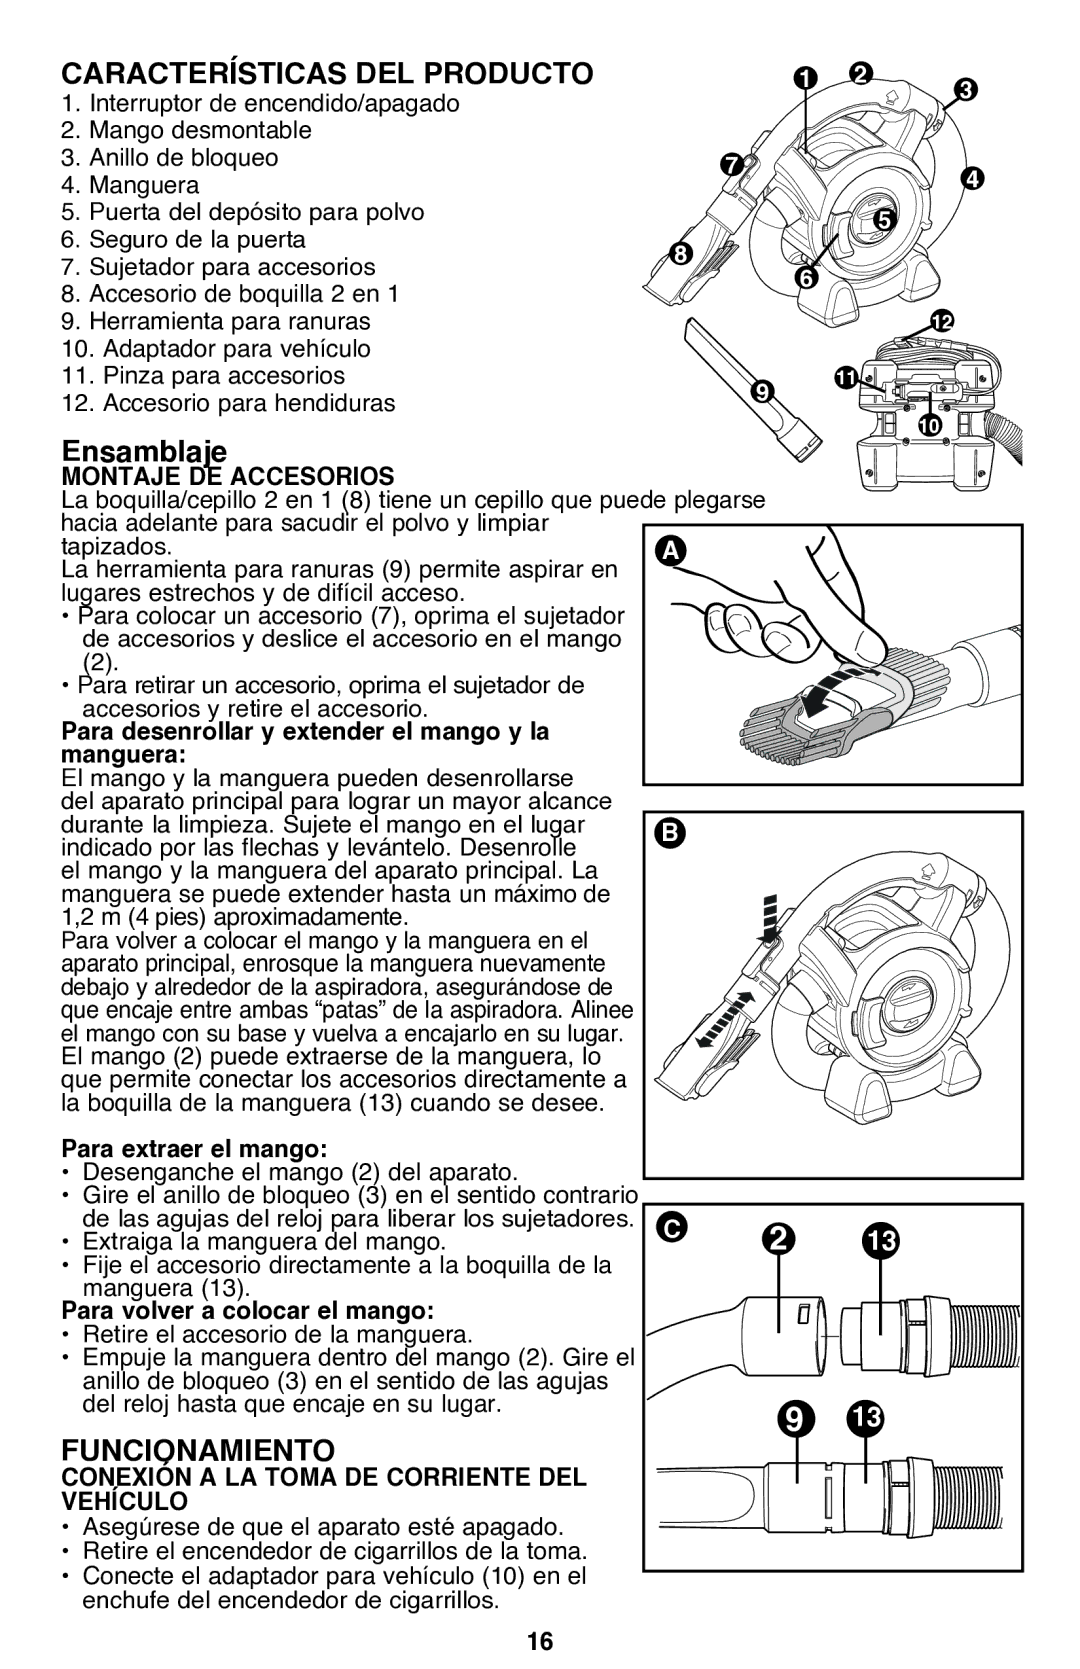 Black & Decker PAD1200 instruction manual Características DEL Producto, Ensamblaje, Funcionamiento 